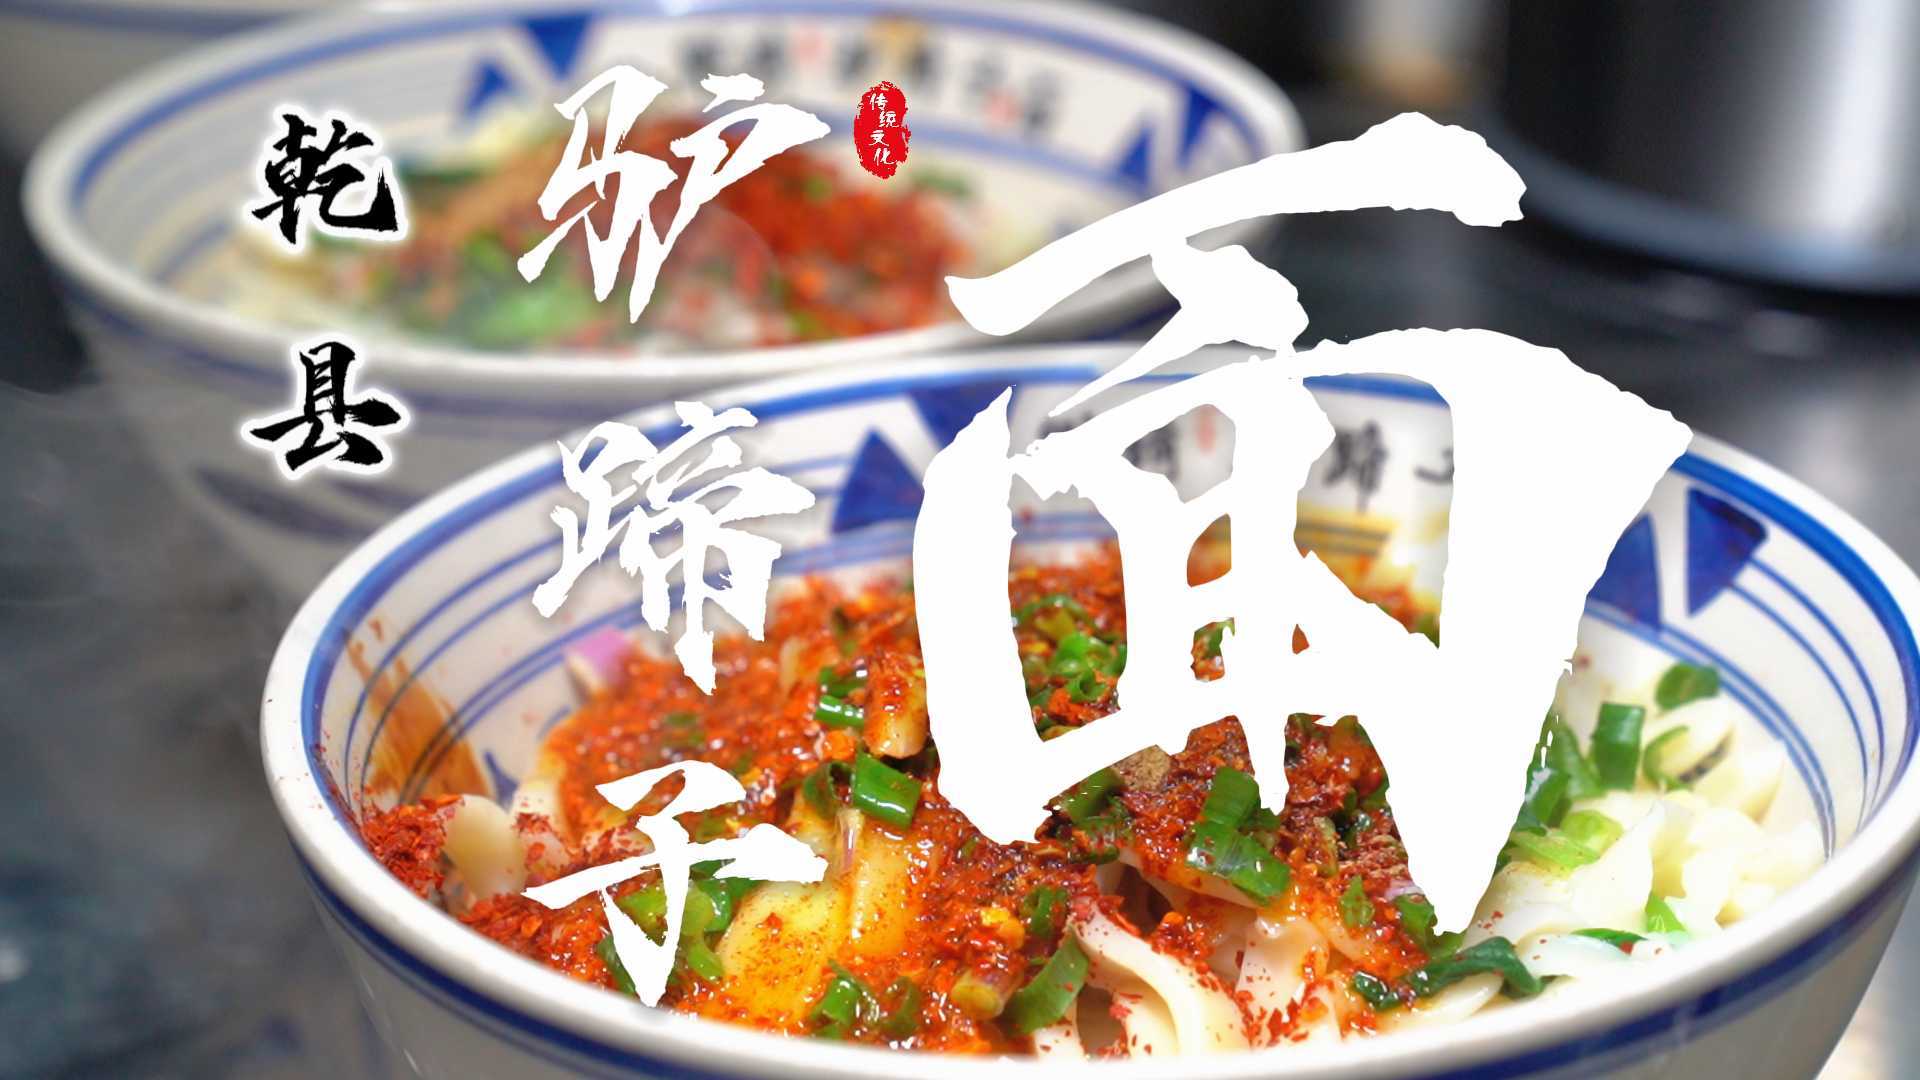 美食纪录片 | 中国传统面食 驴蹄子